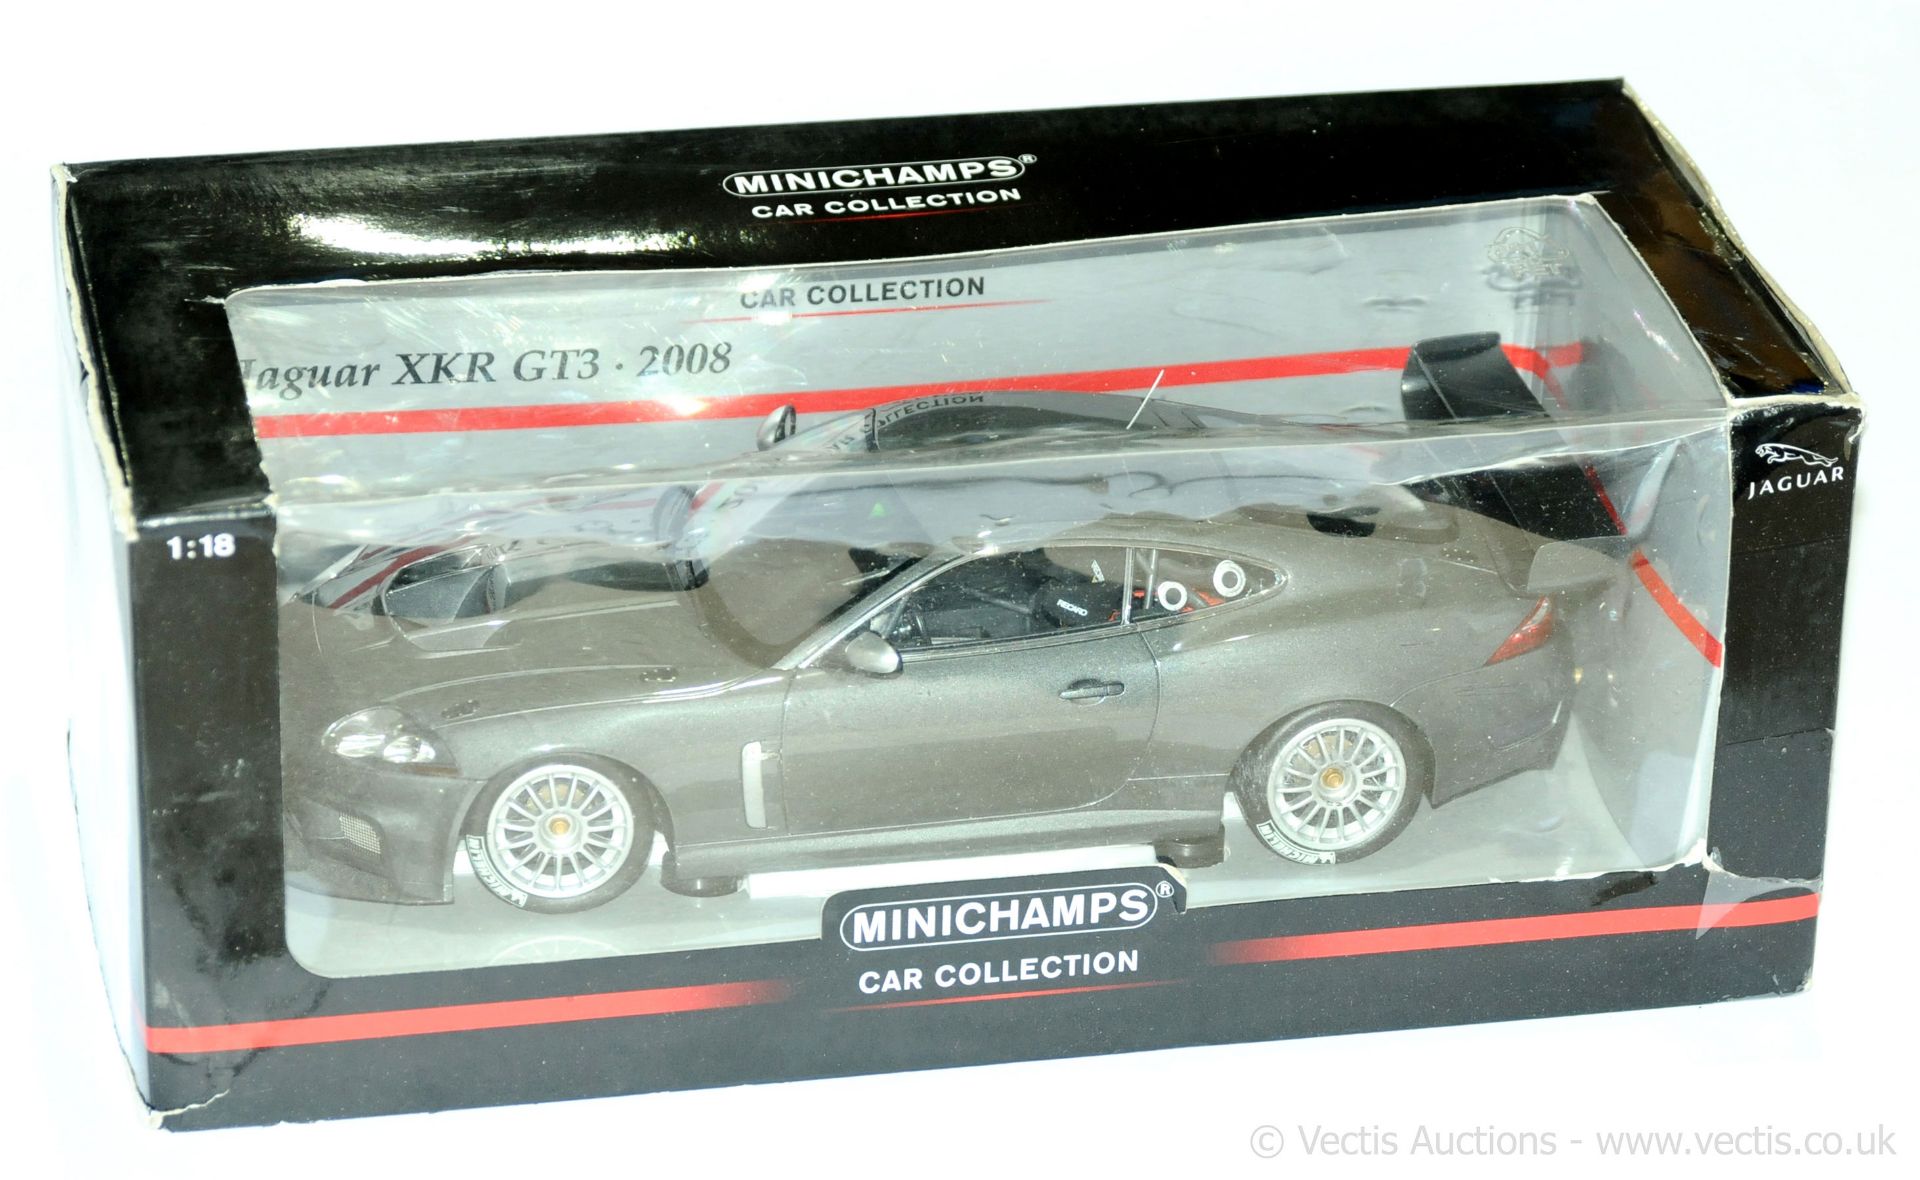 Minichamps boxed 1/18th scale Jaguar XKR GT3